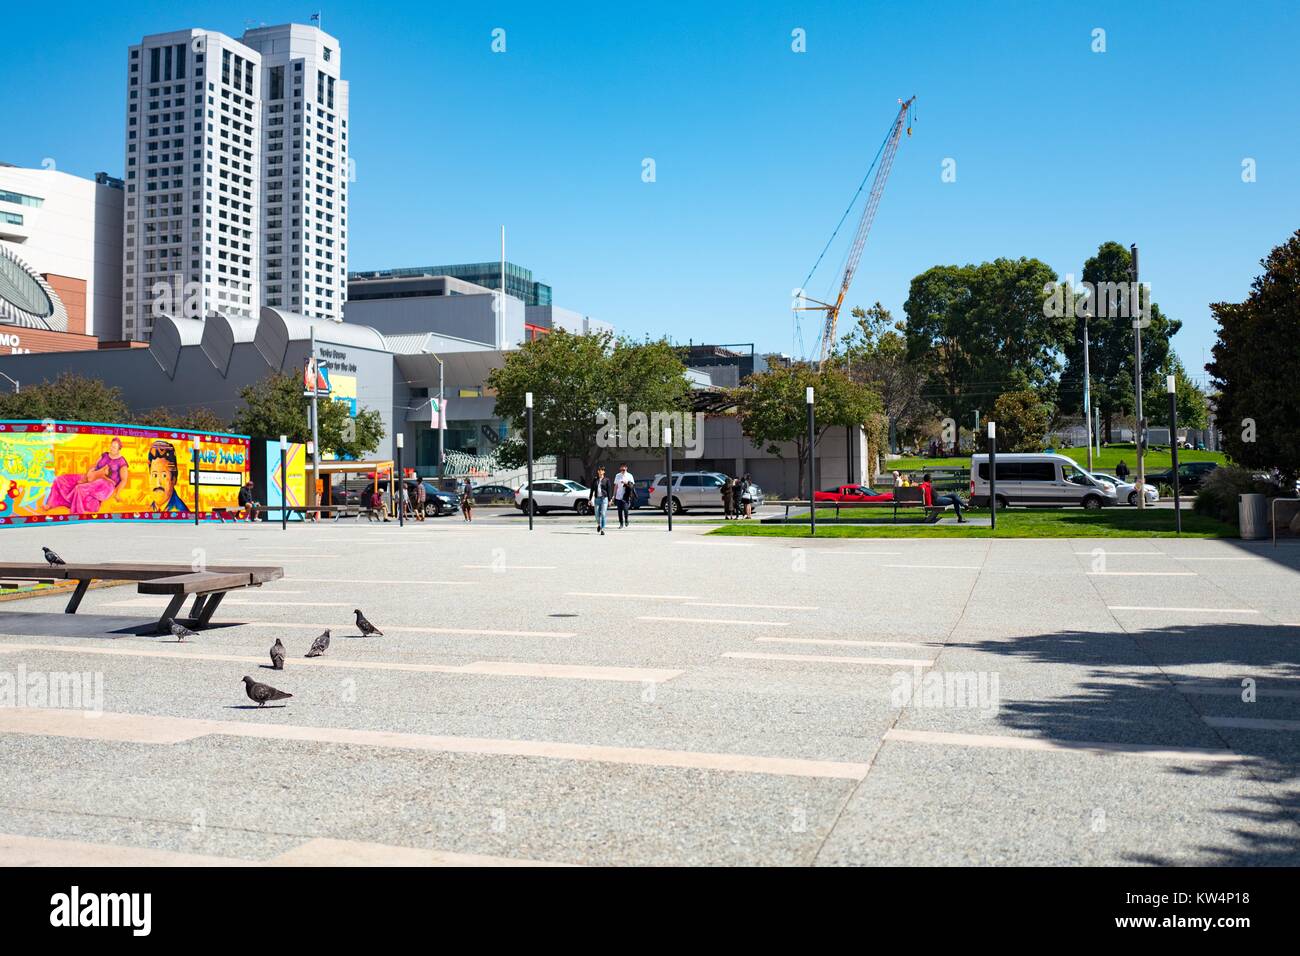 Das Äußere des Yerba Buena Center für die Künste als von einem Plaza auf der anderen Straßenseite gesehen, San Francisco, Kalifornien, 4. September 2016. Stockfoto